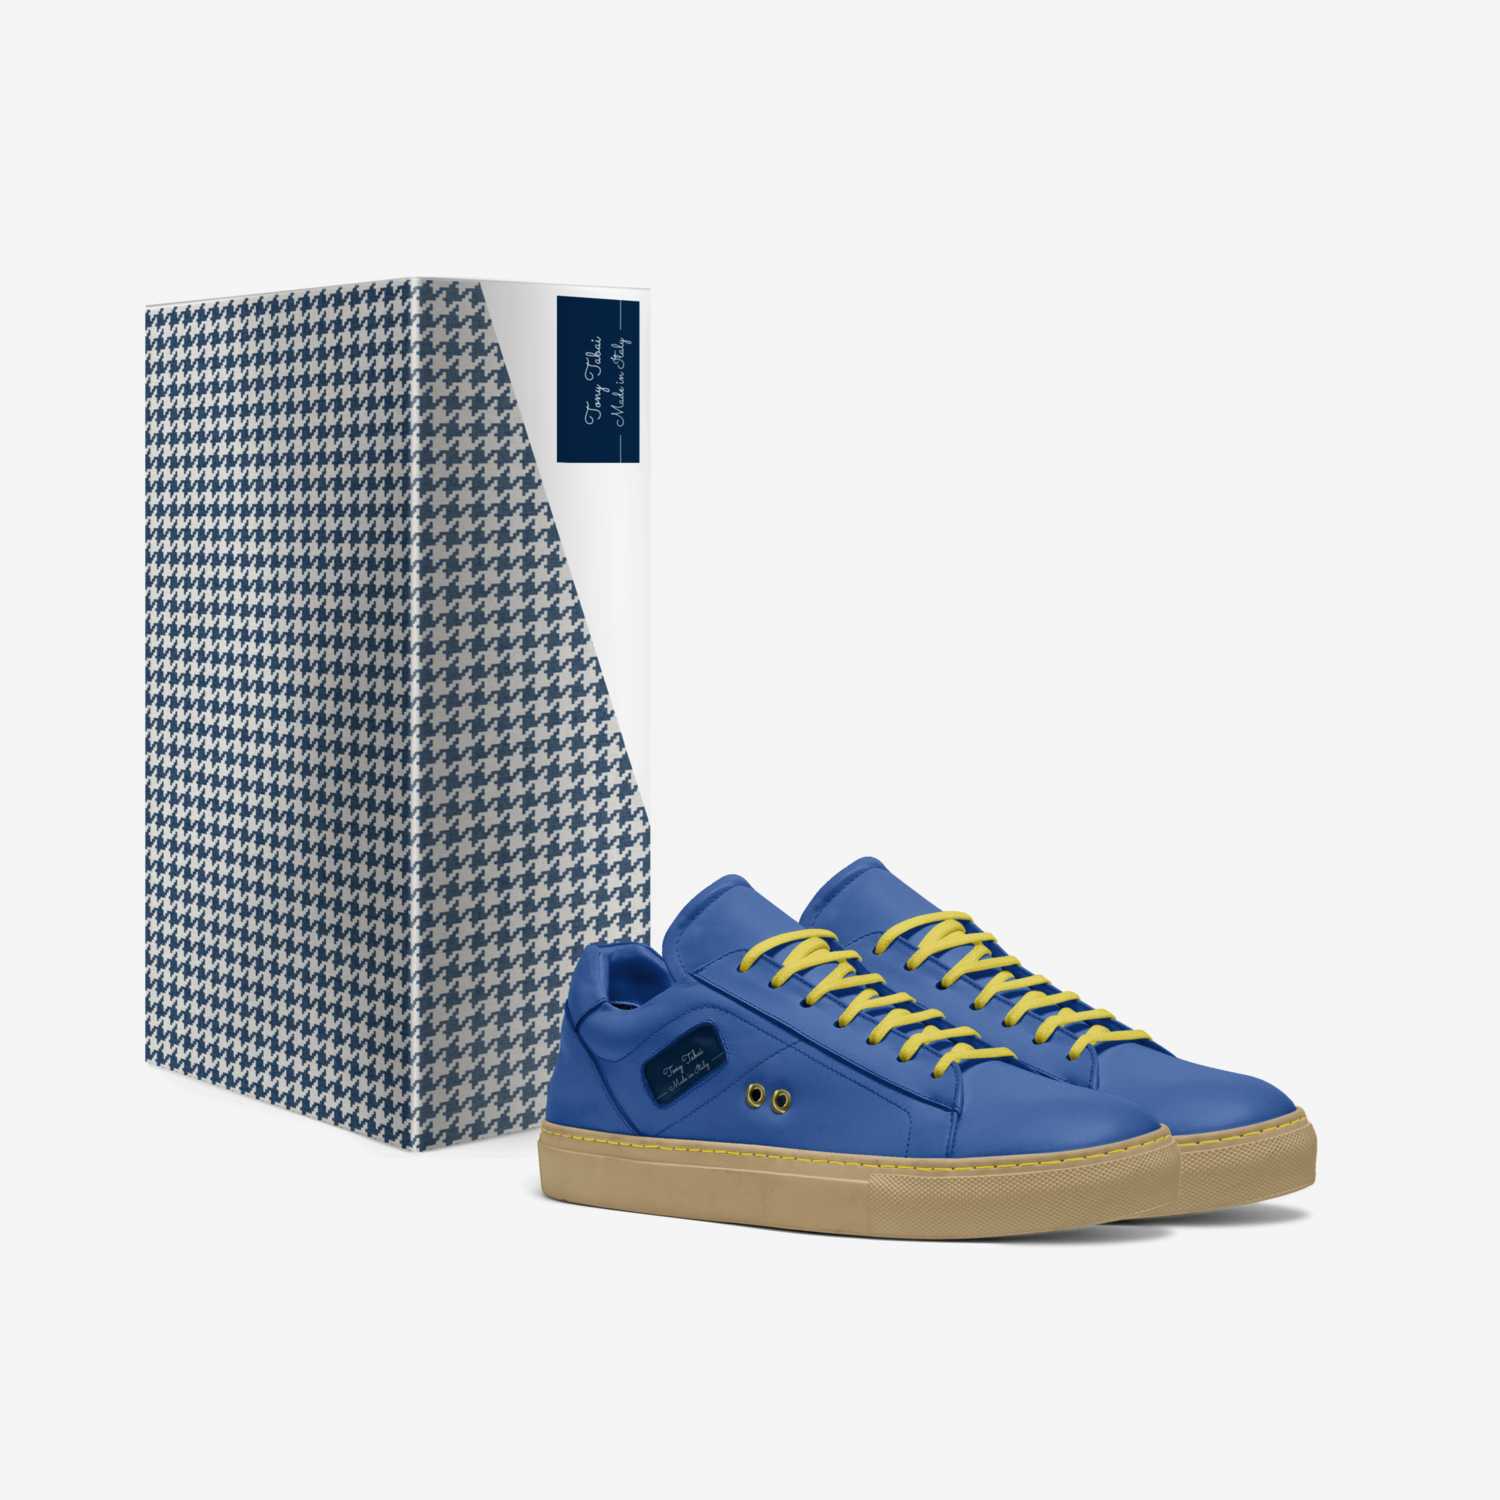 Tony Tabai custom made in Italy shoes by Tony Tabai | Box view